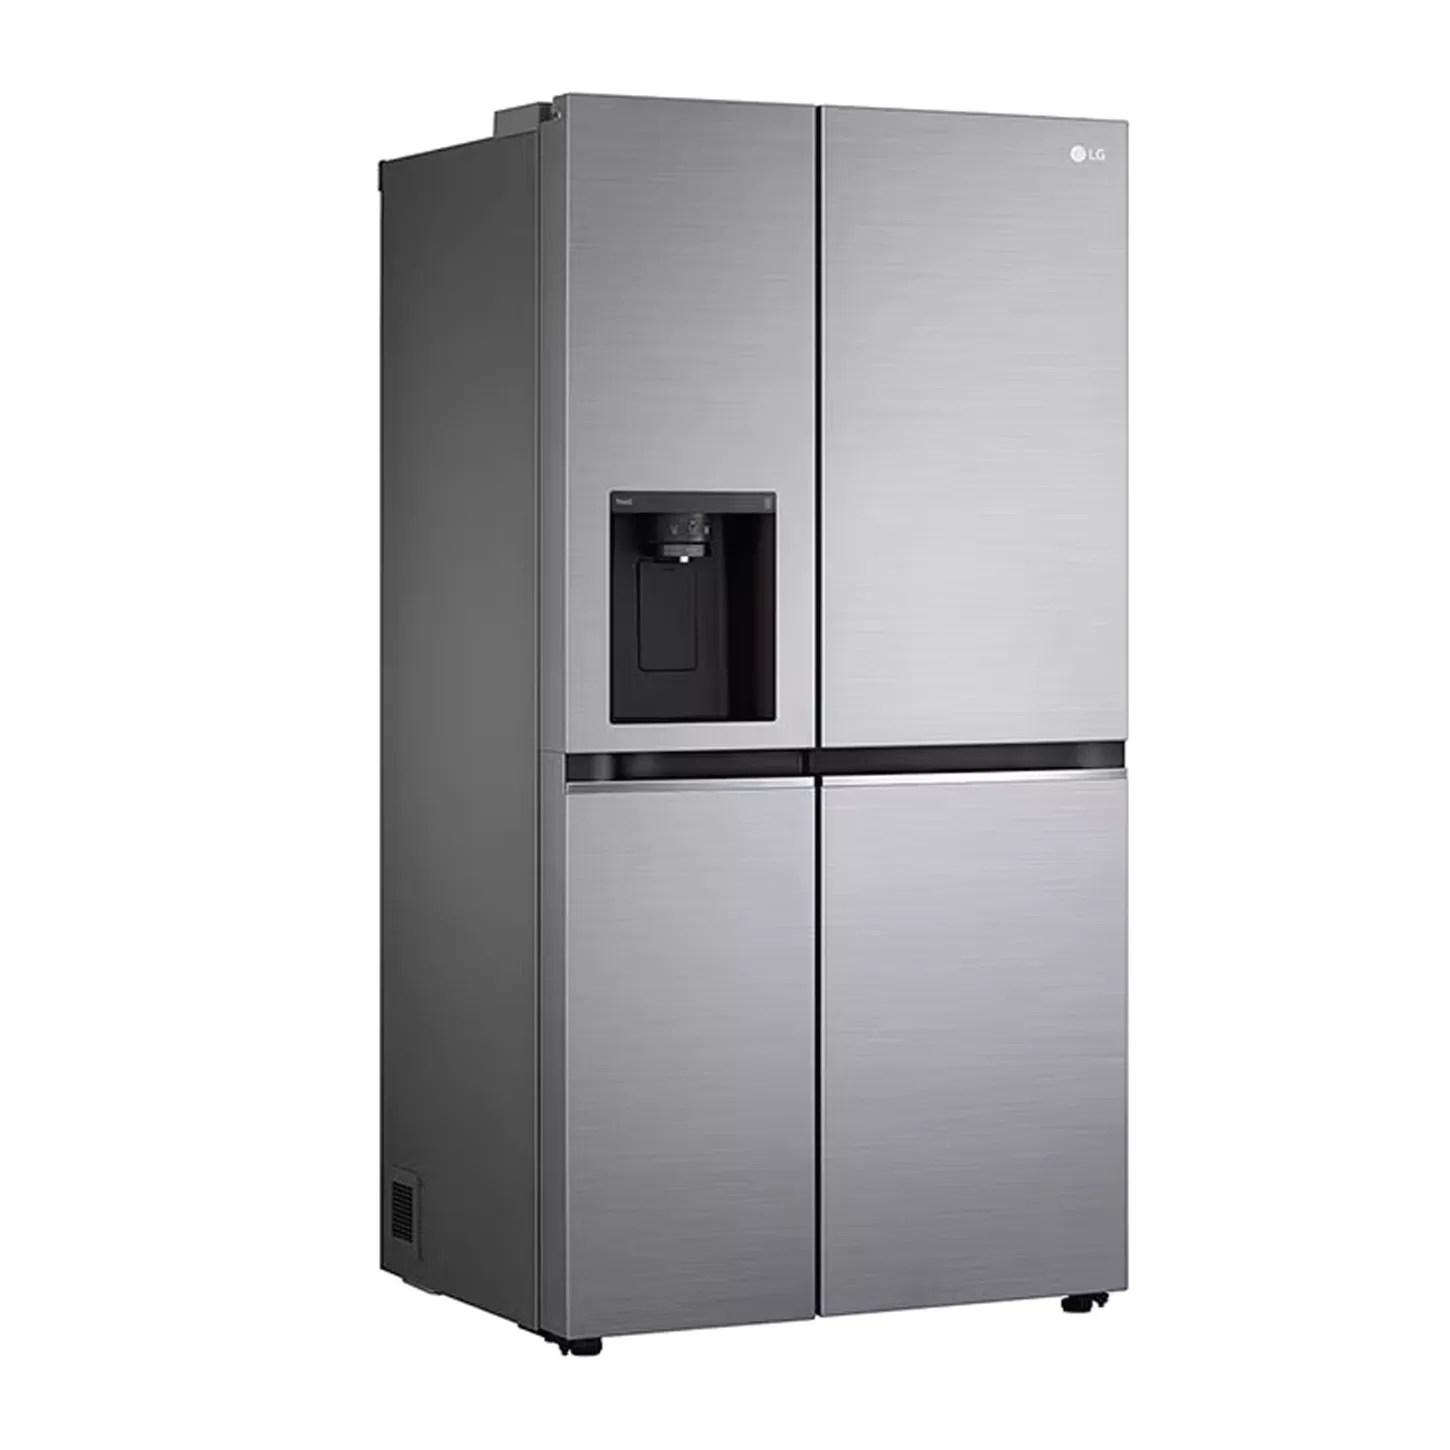 Refrigeradora con dispensador LG GS75SPP de 27' Inverter